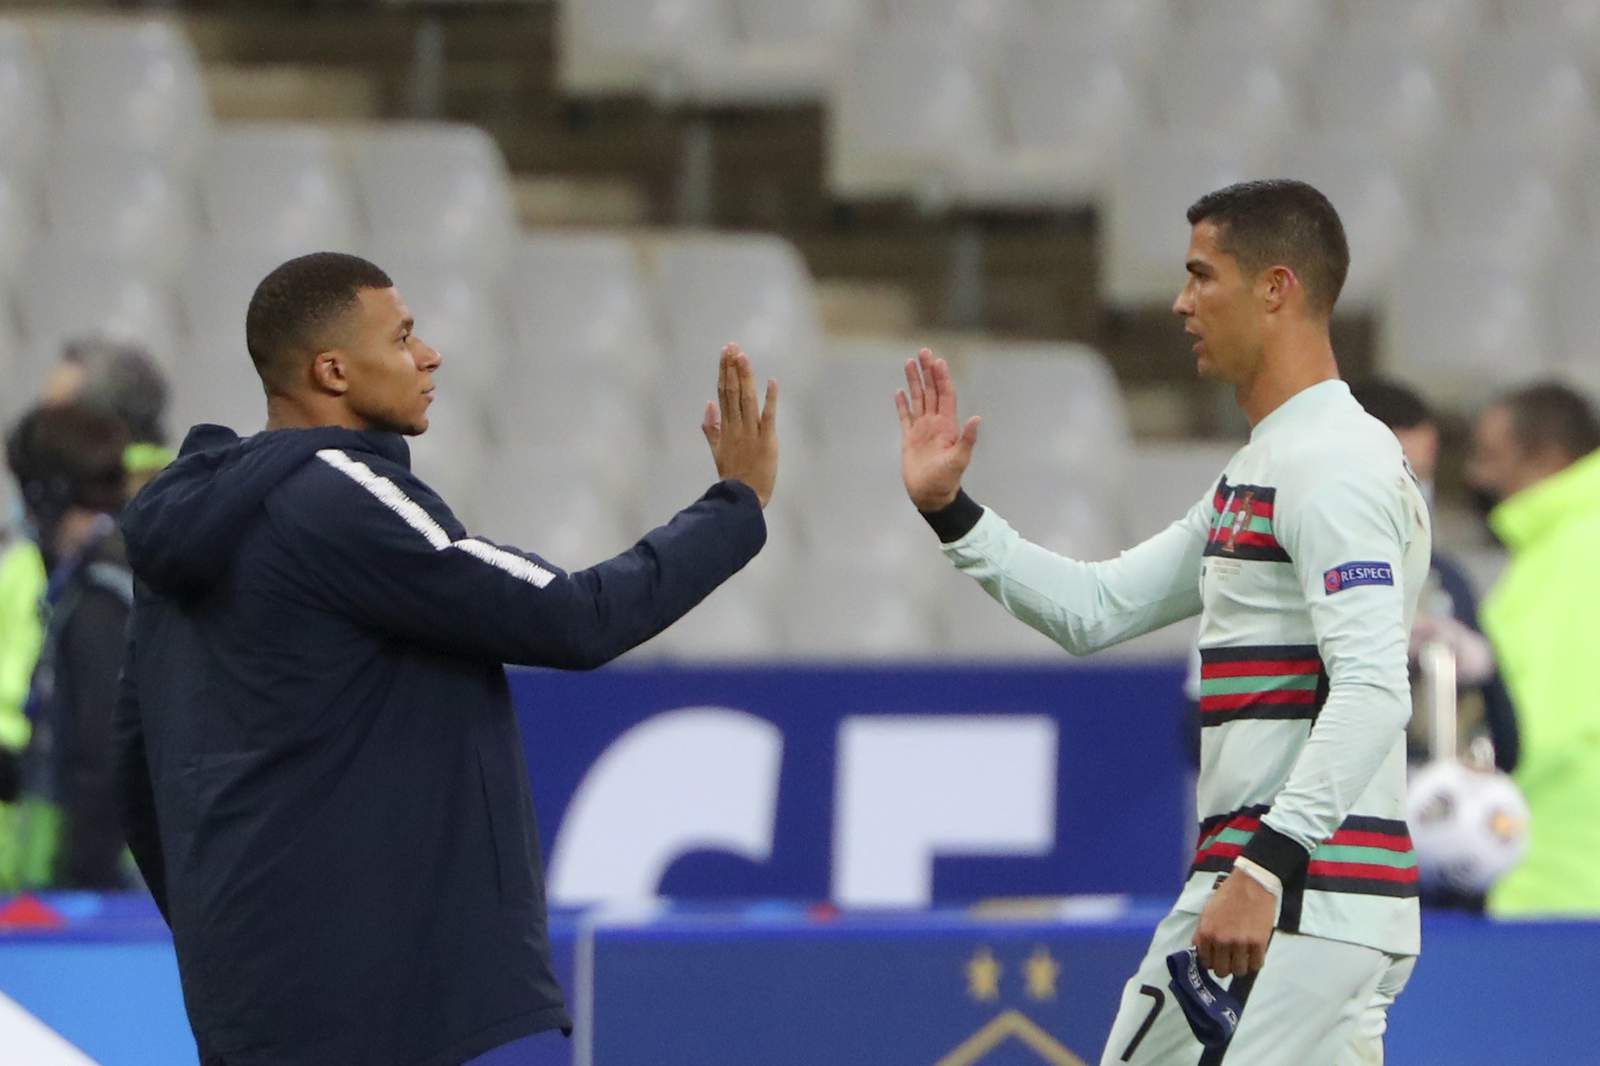 Cristiano Ronaldo tests positive for COVID-19